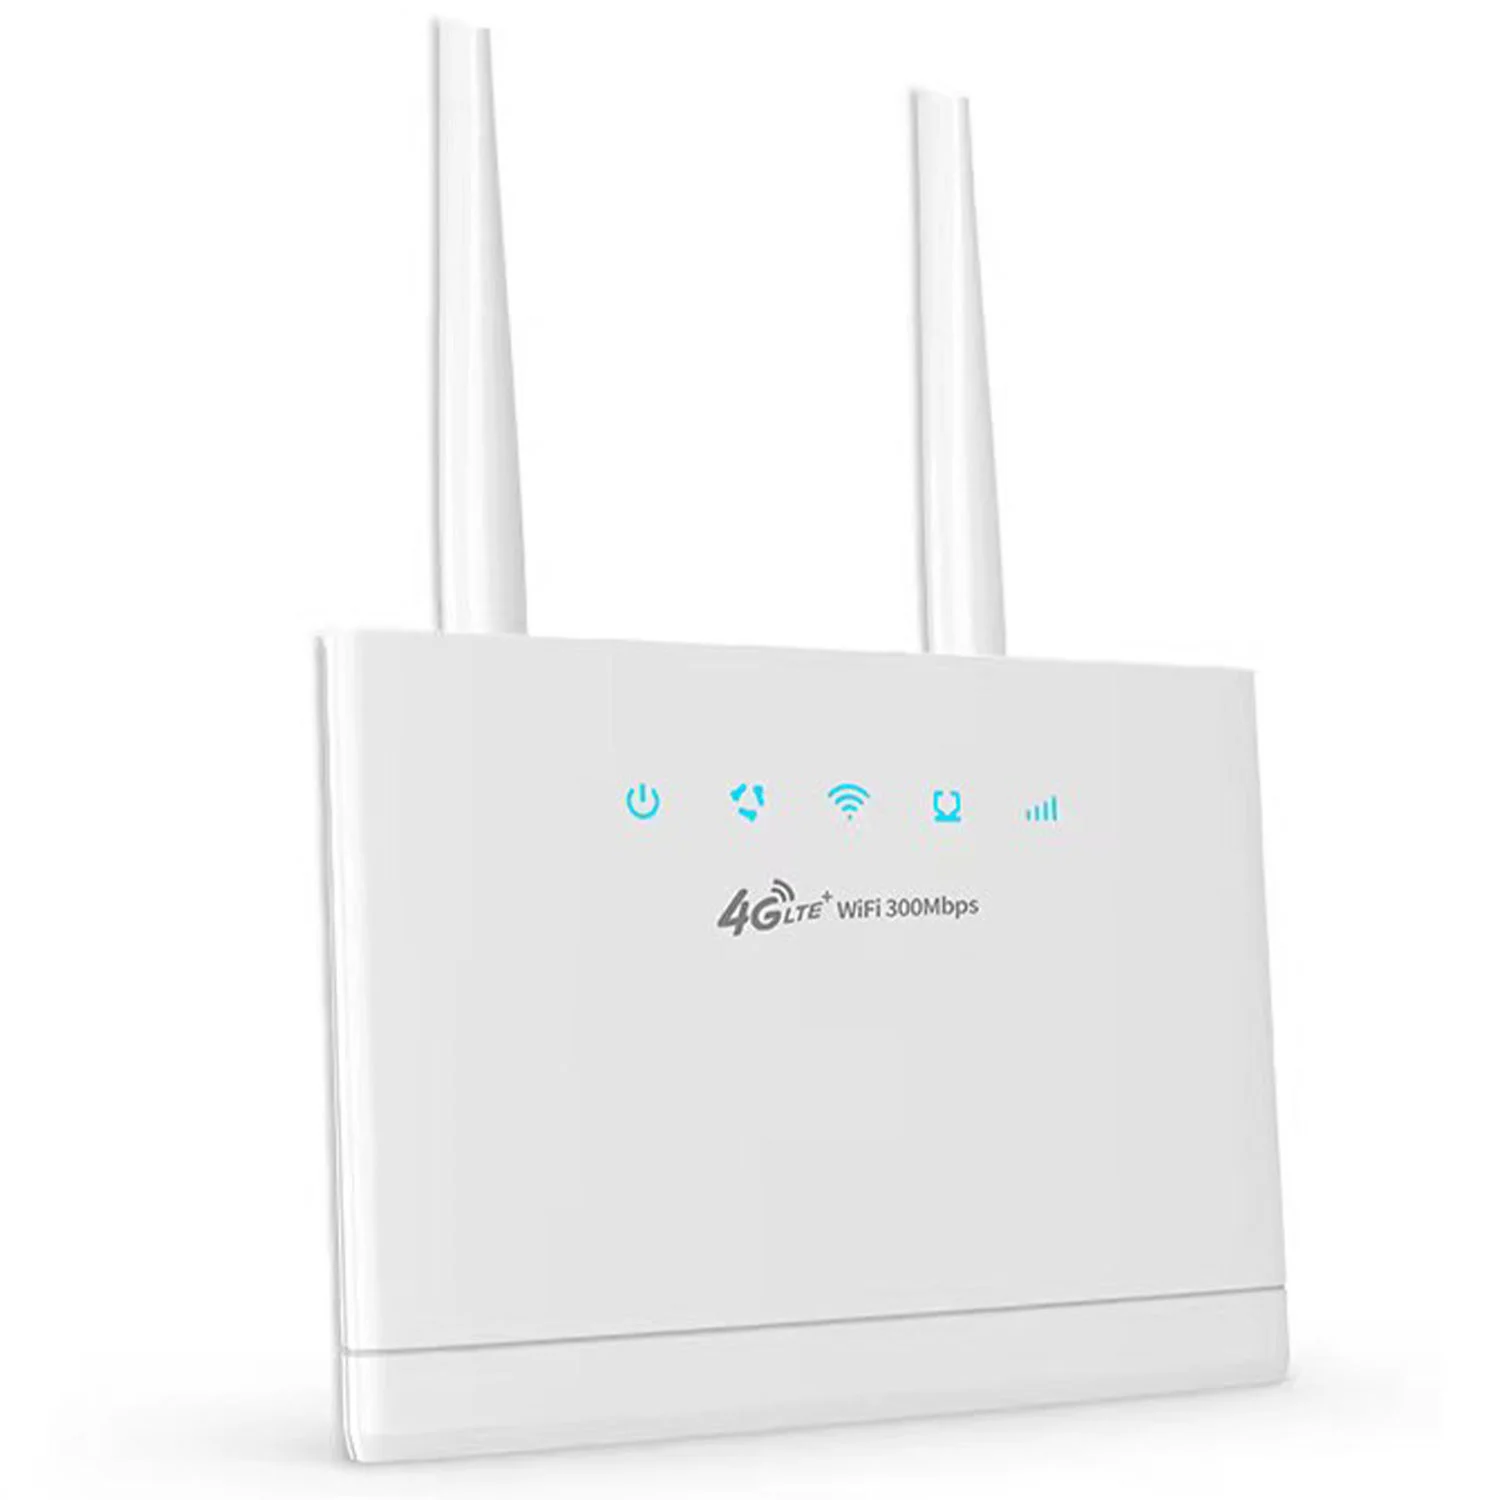 pixlink-routeur-et-modem-sim-4g-avec-carte-wifi-dongle-de-haute-qualite-permanence-illimitee